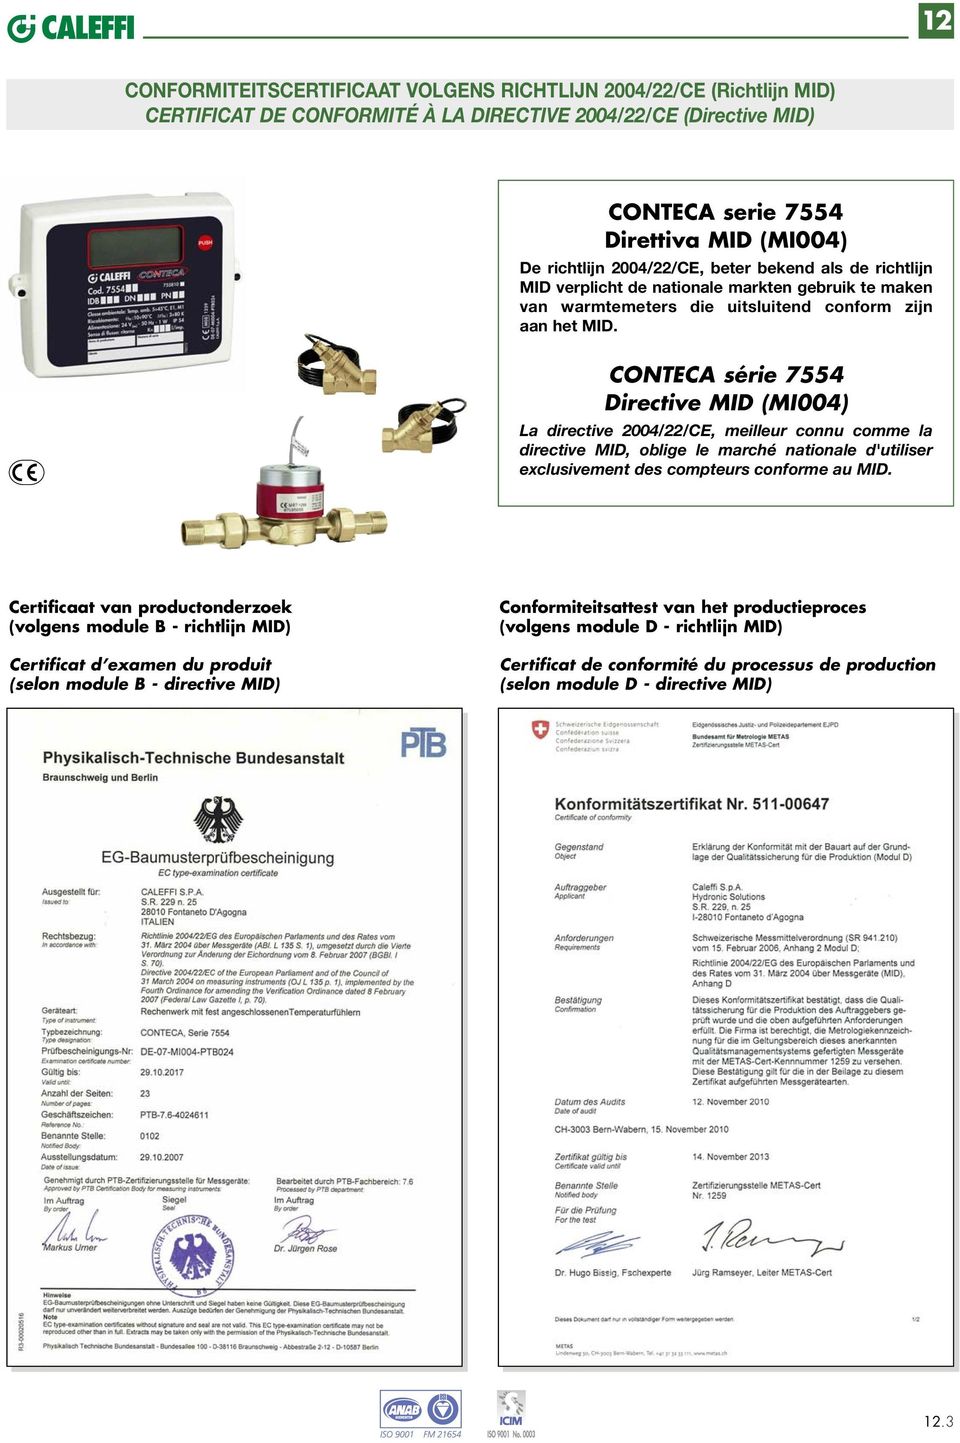 CONTECA série 7554 Directive MID (MI004) La directive 004//CE, meilleur connu comme la directive MID, oblige le marché nationale d'utiliser exclusivement des compteurs conforme au MID.